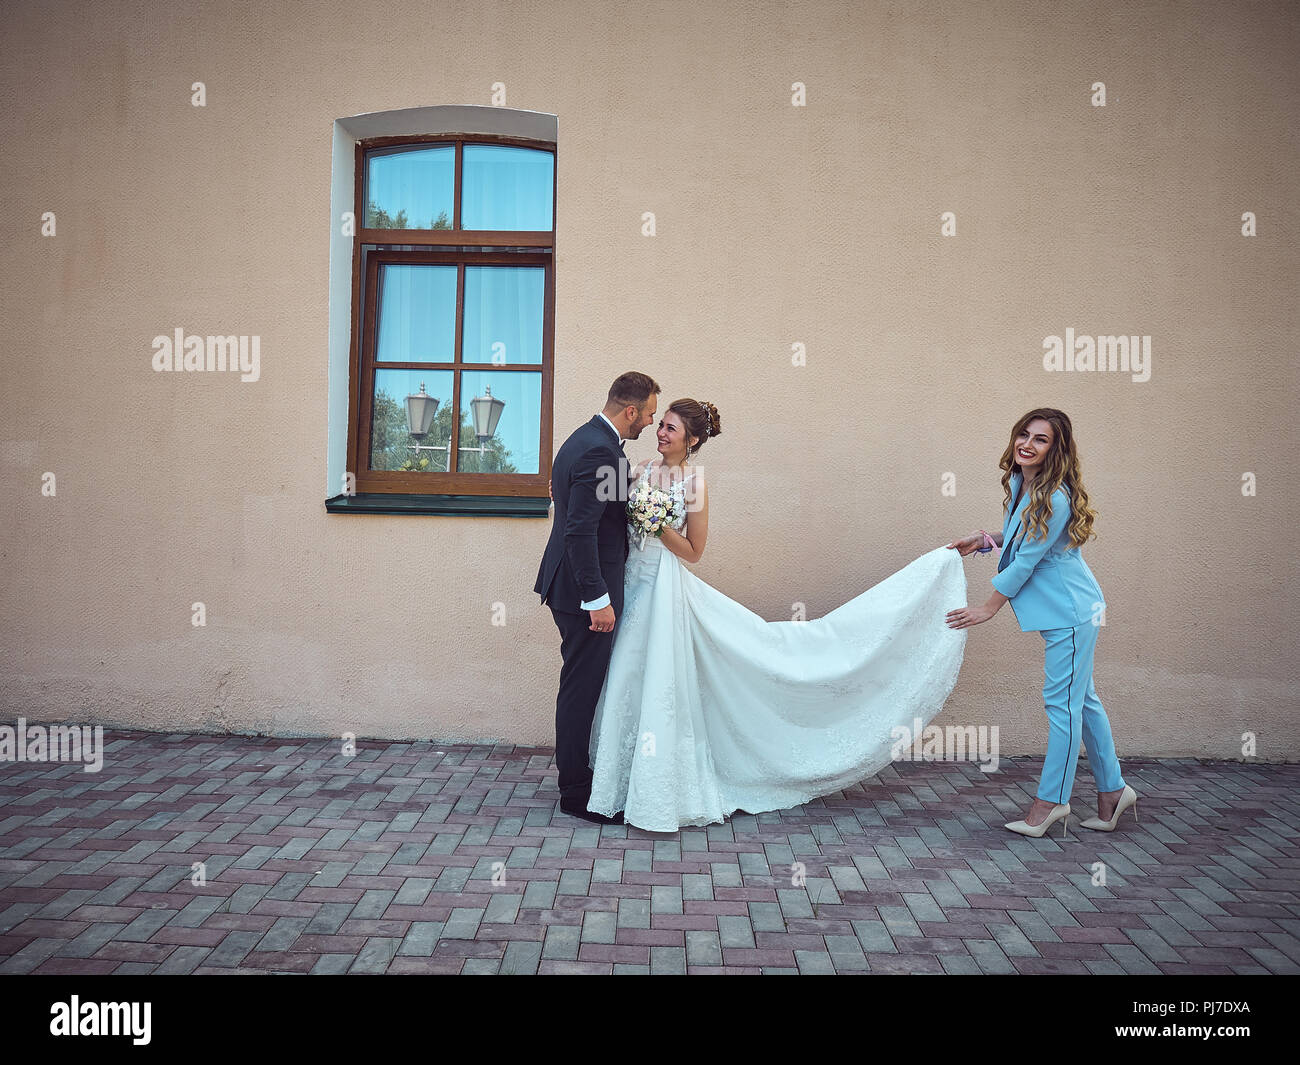 Feierliche Zeremonie der Ehe der Jungvermählten. Bräuche und Traditionen aus vergangenen Leben in der alten Sowjetunion geerbt. Leute haben Spaß, Trinken. Stockfoto